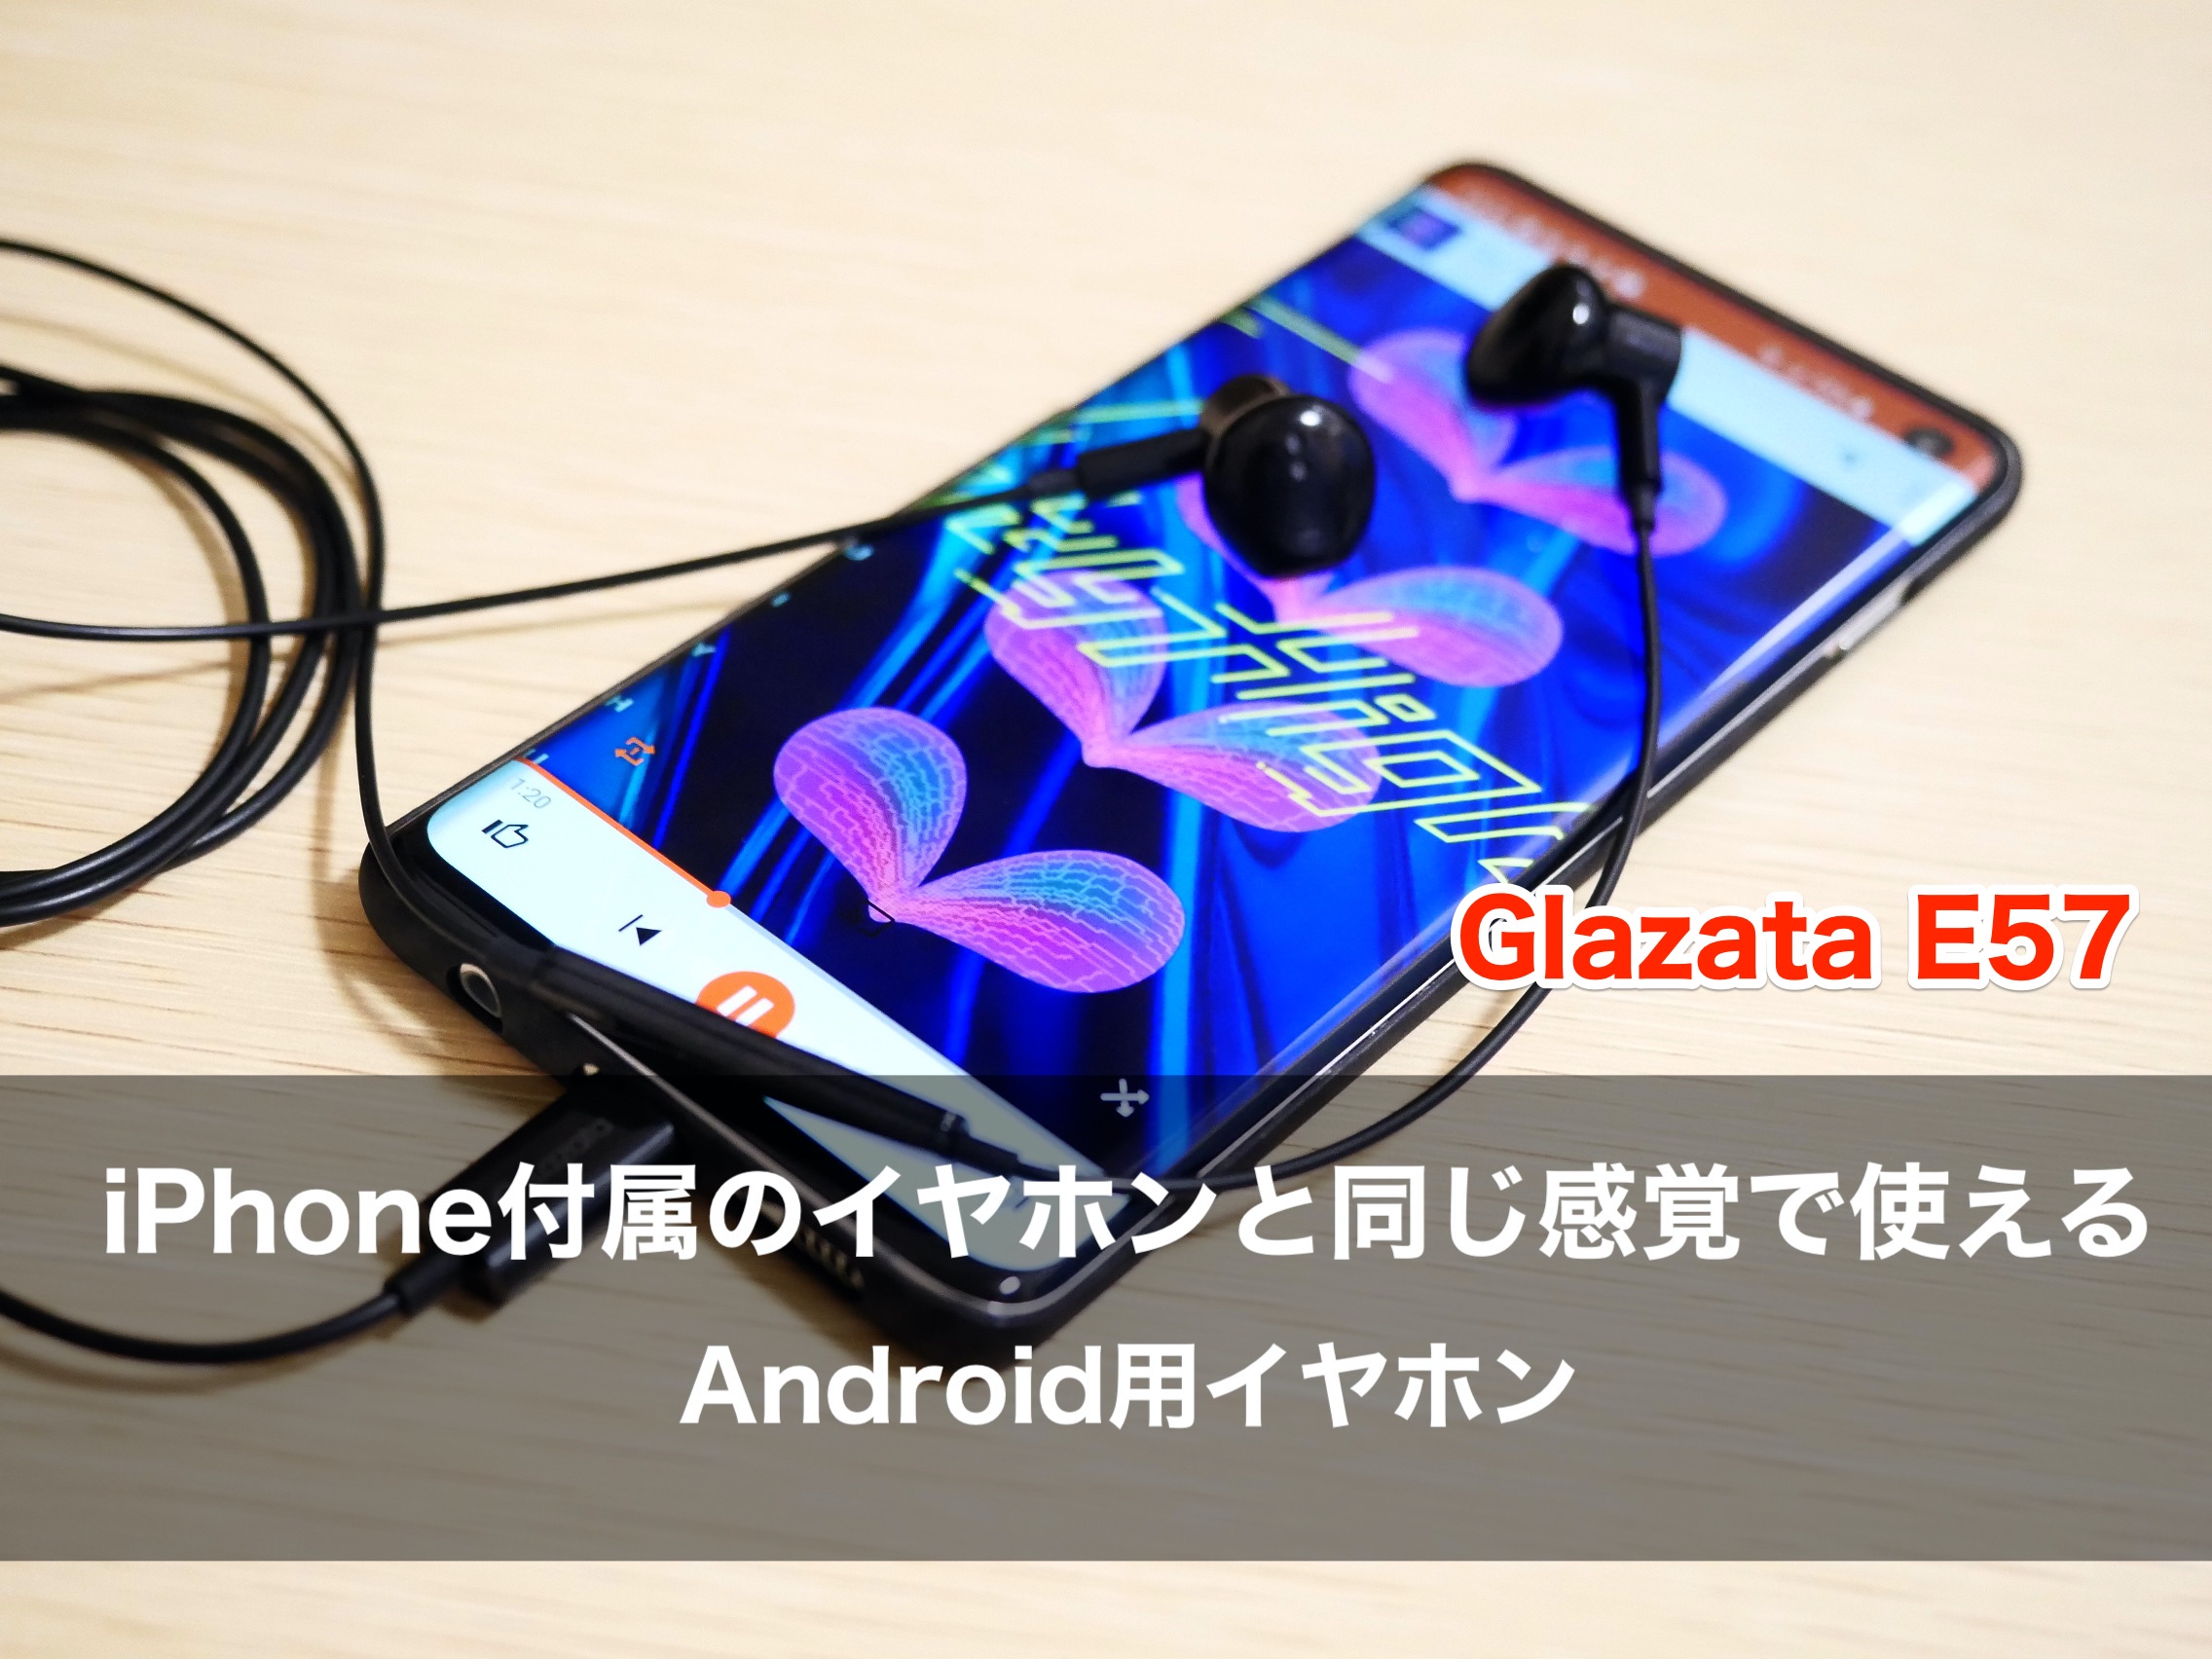 Iphone付属のイヤホンと同じ感覚で使えるandroid用イヤホン Glazata E57 をレビュー クロレビ